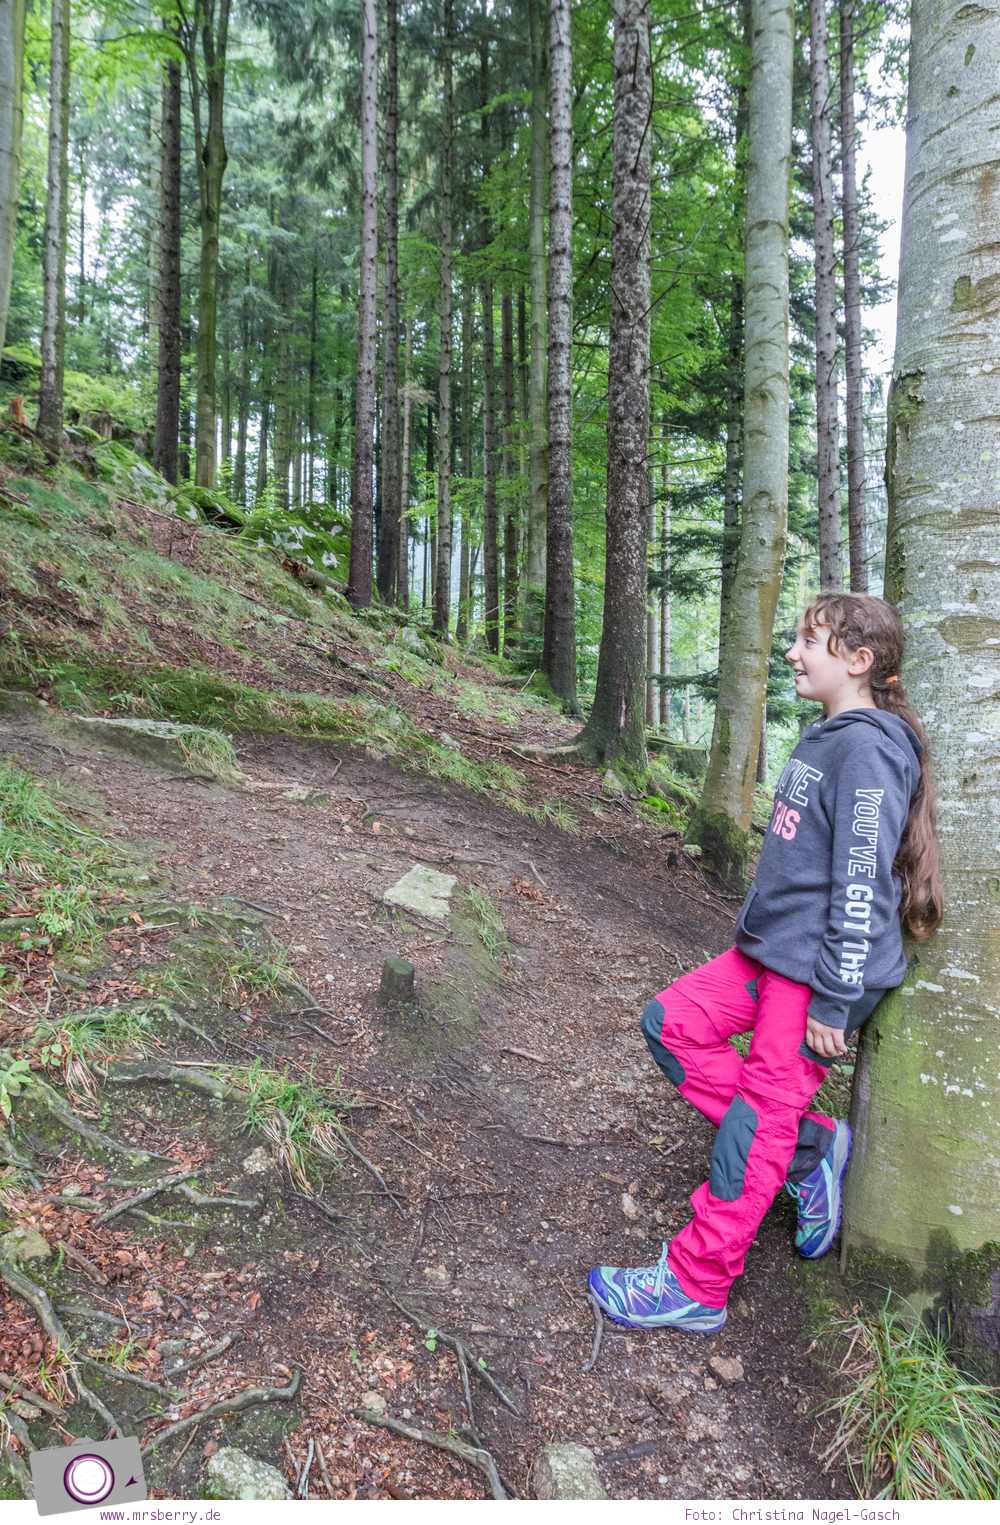 Mit dem Merrell Capra Bolt Lace Kinder Wanderschuh sicher und trockenen Fusses unterweges im Wald.